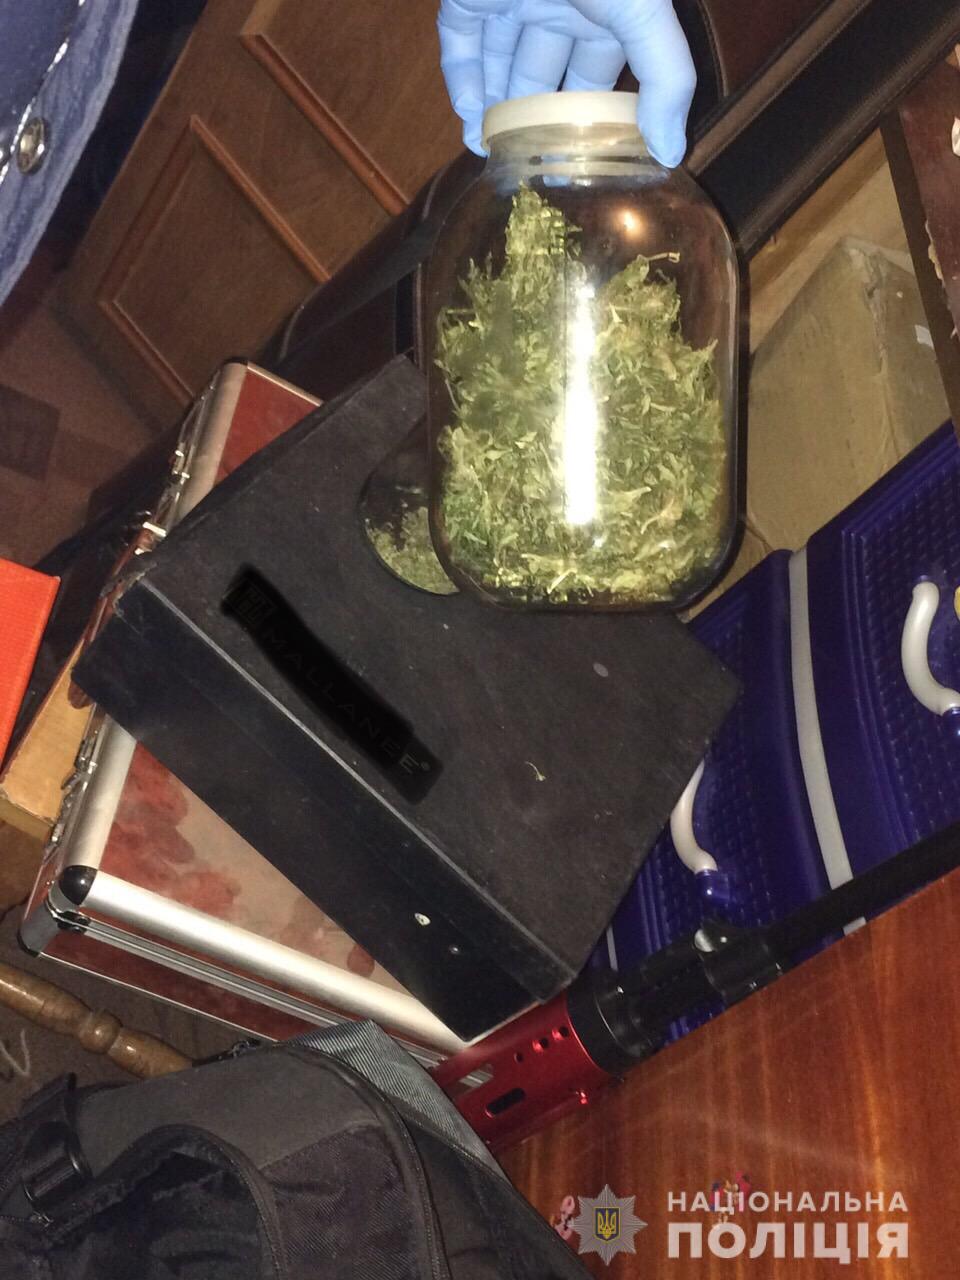 Під час обшуку будинку мешканця Закарпаття поліція знайшла дві банки з марихуаною